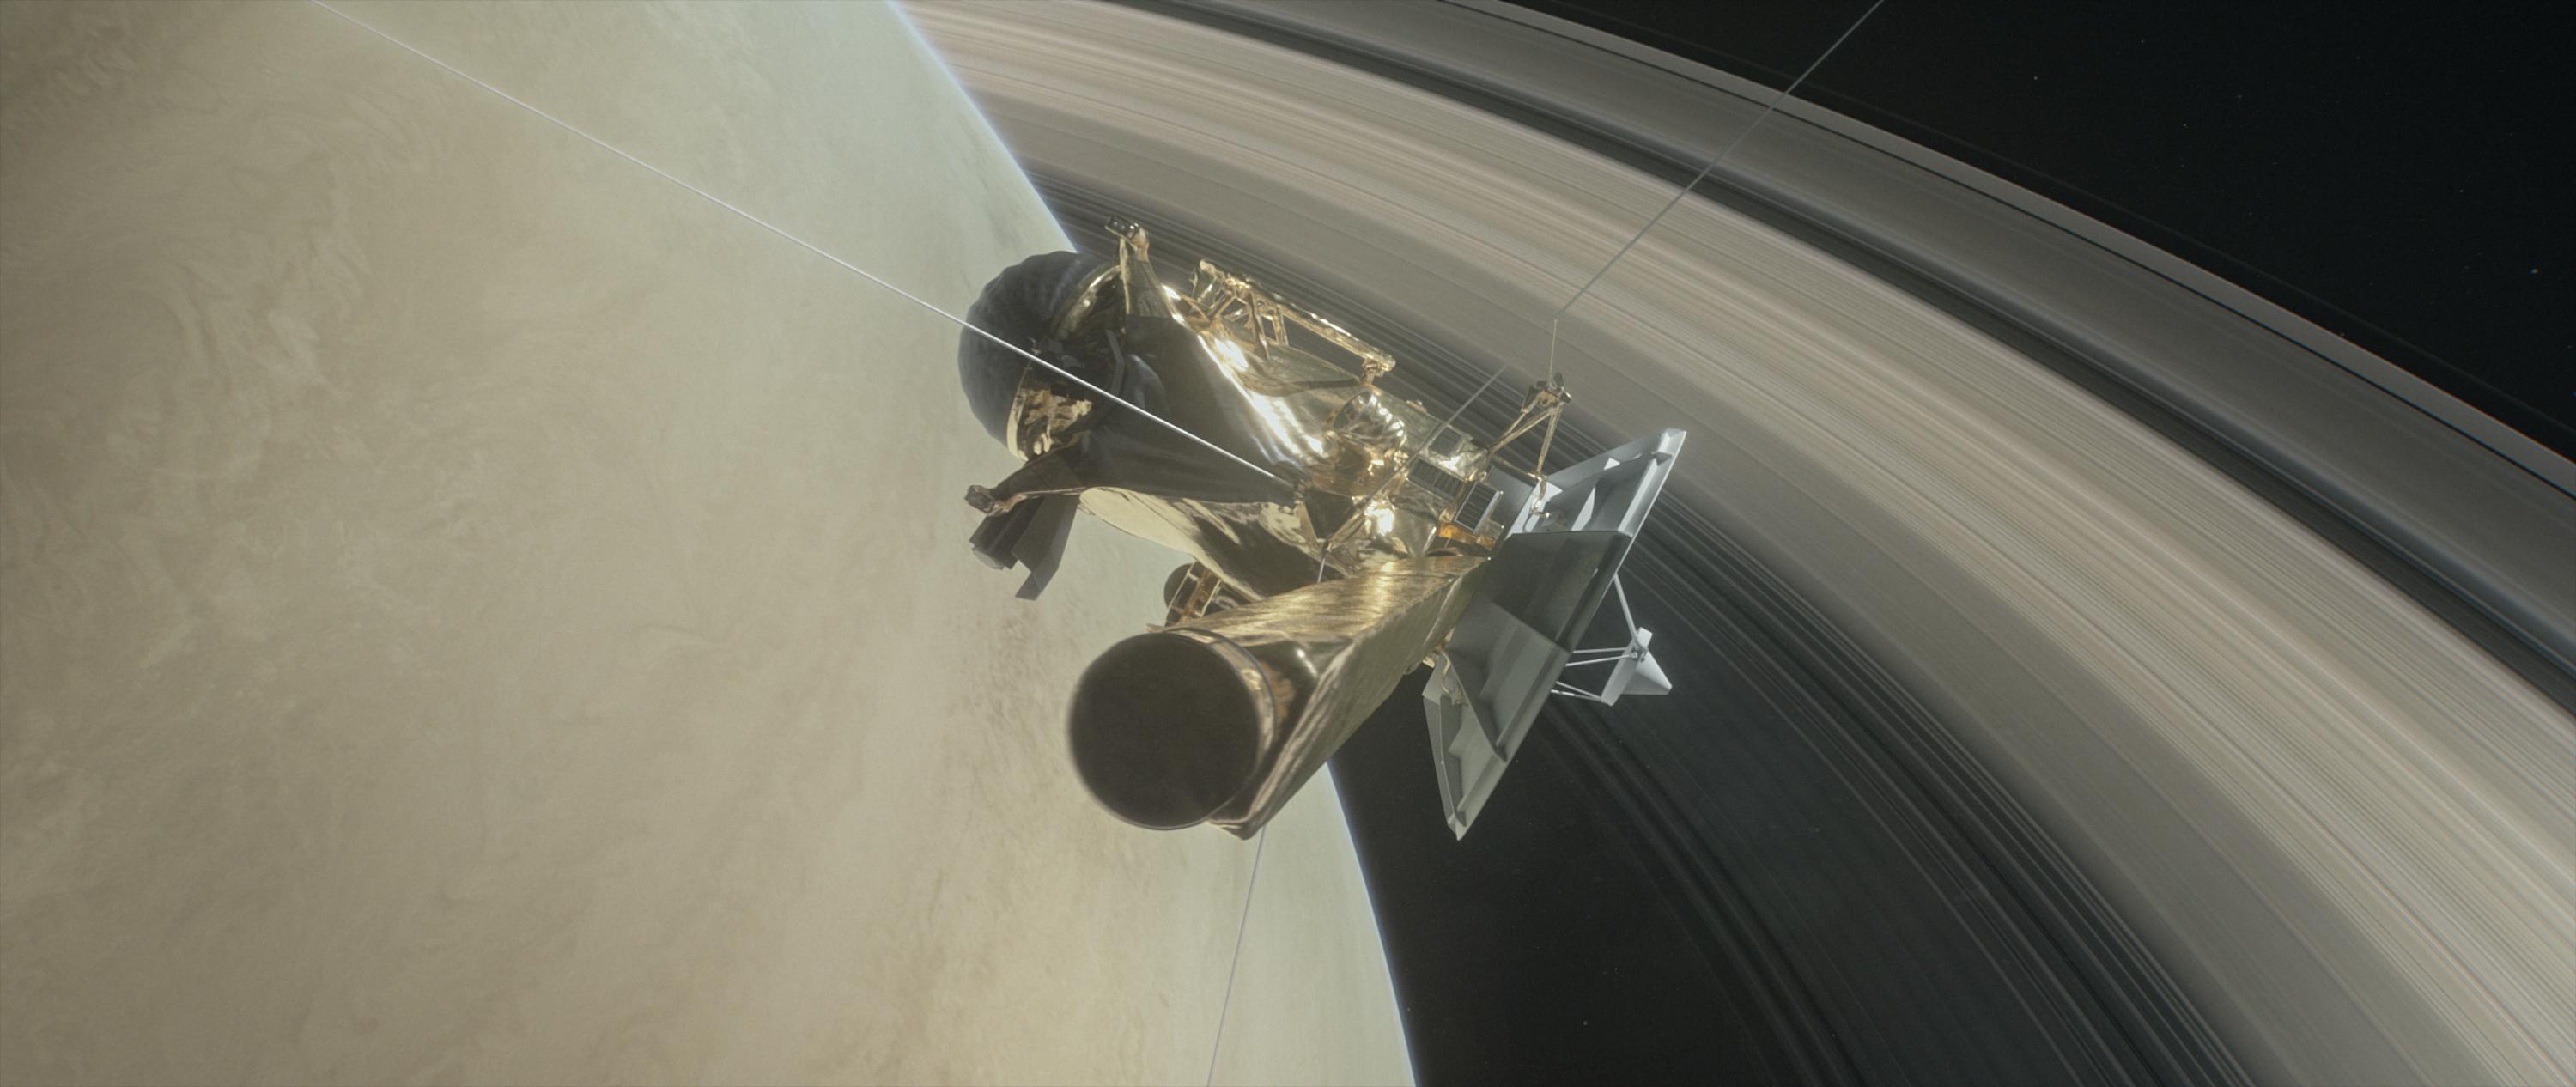 Кассини погрузится в атмосферу Сатурна 15 сентября и самоуничтожится 